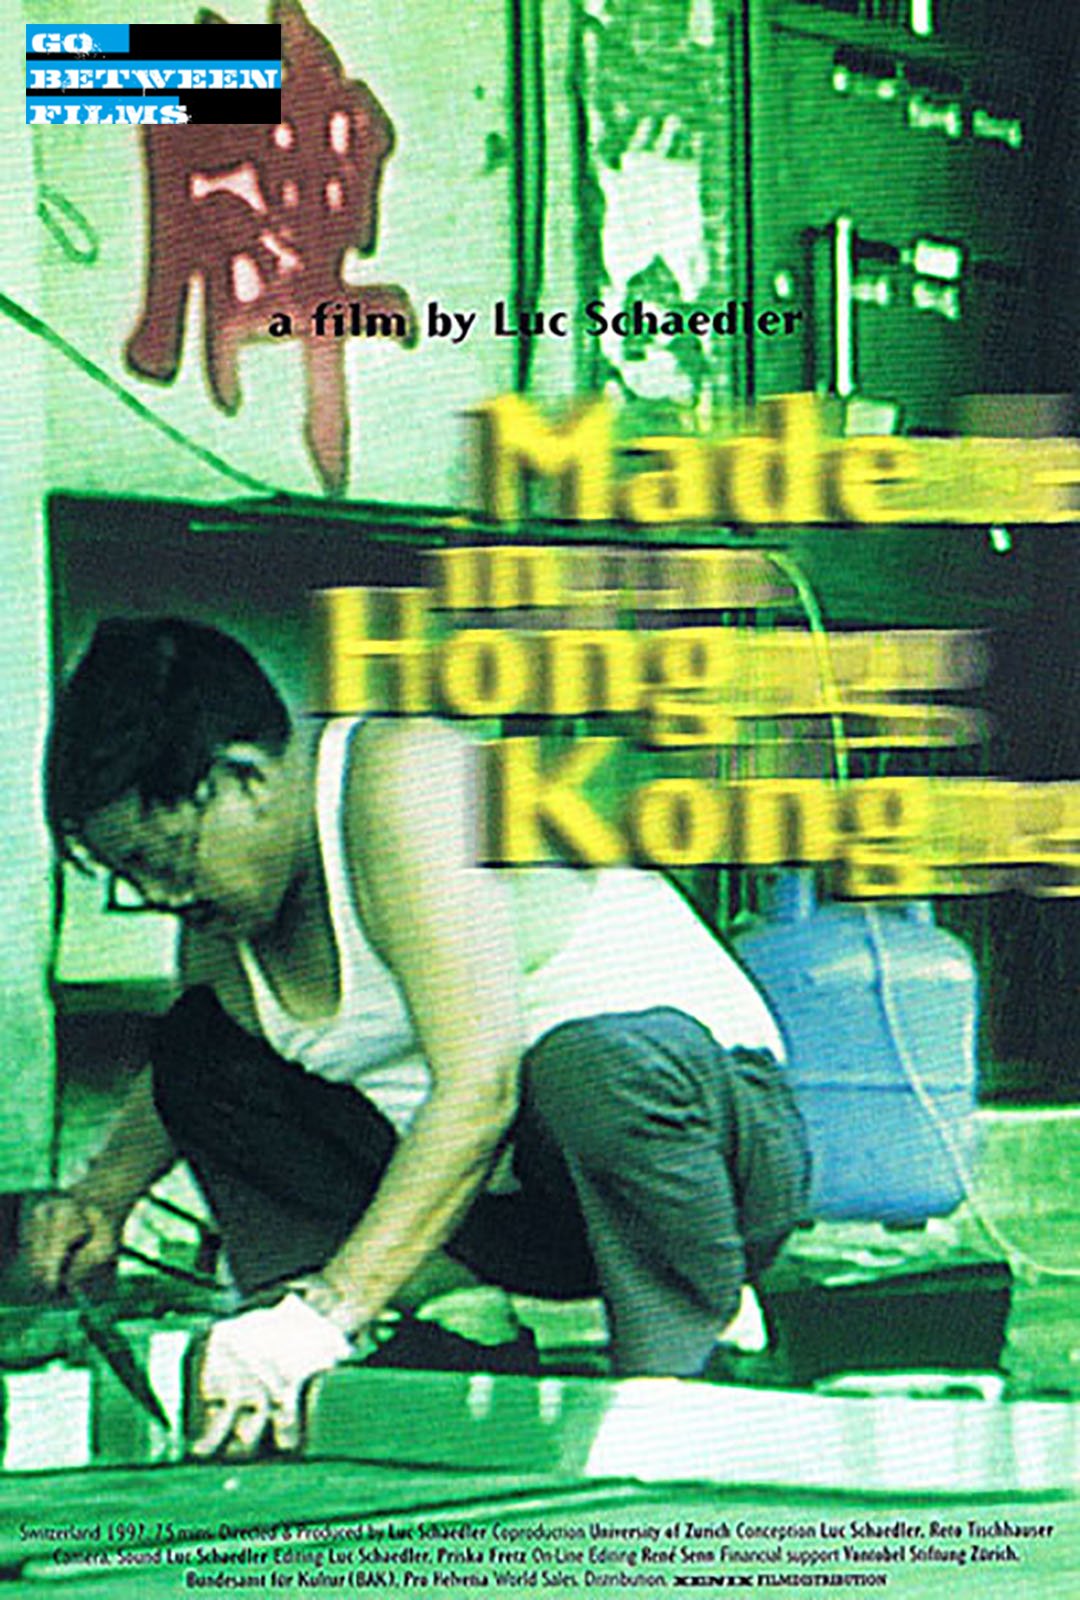 made in hong kong - luc schaedler - go between films - dokumentarfilm